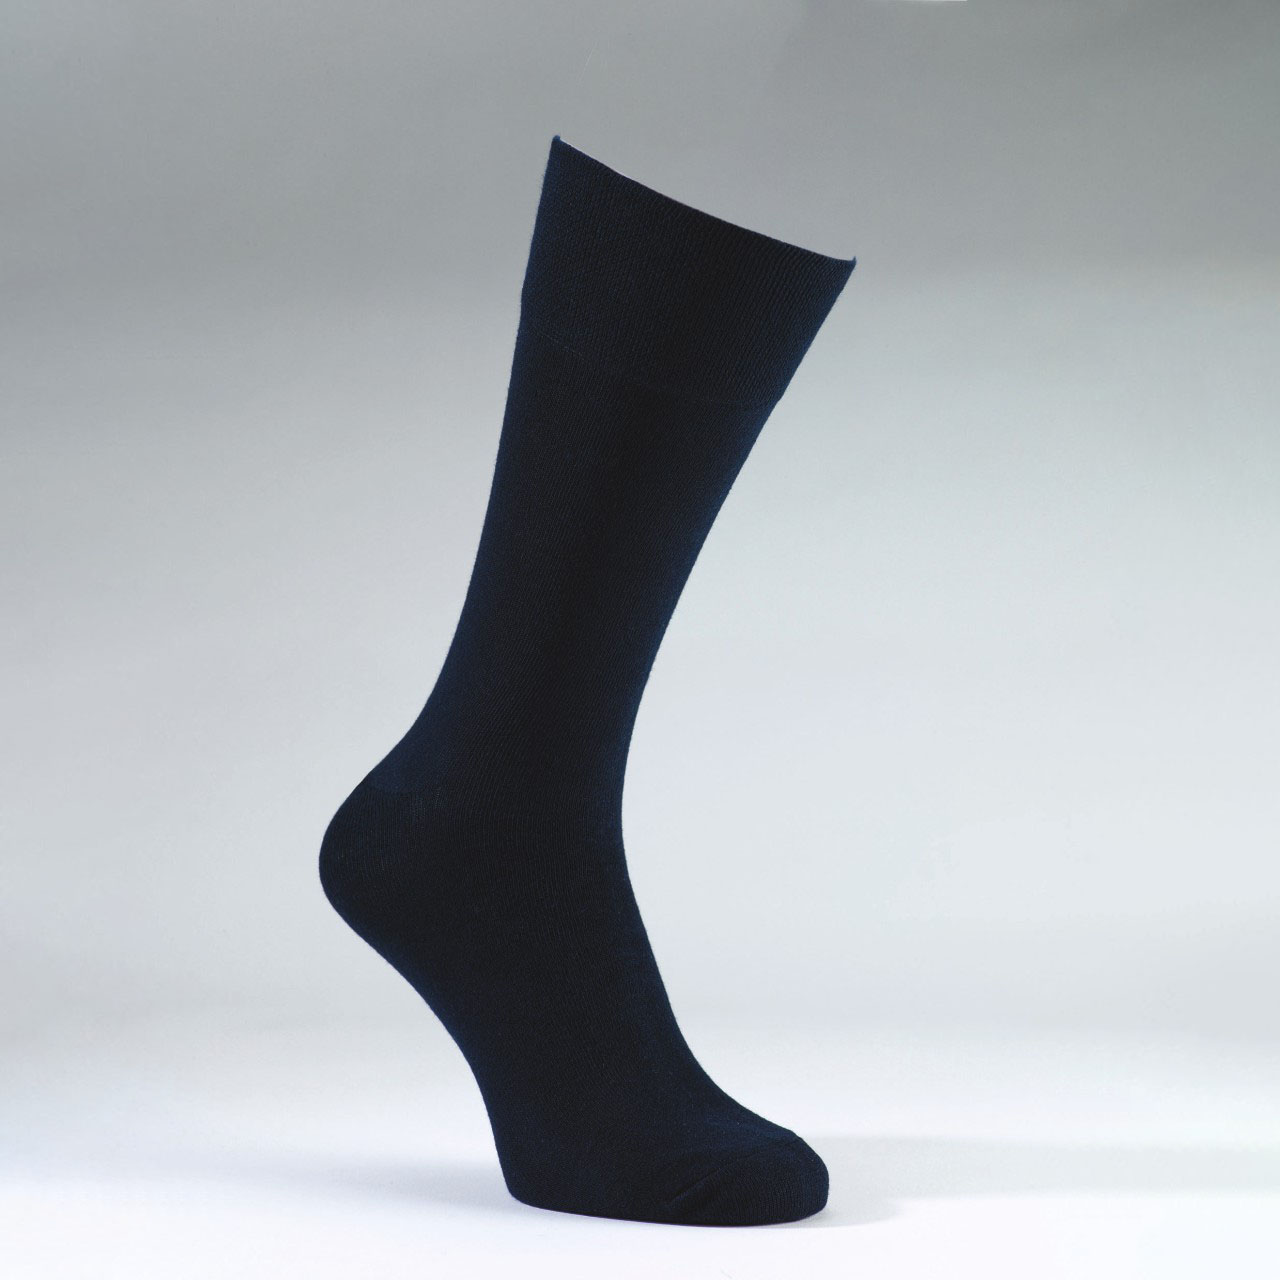 Gentle Grip Socks 3 Pack - Grey Mens